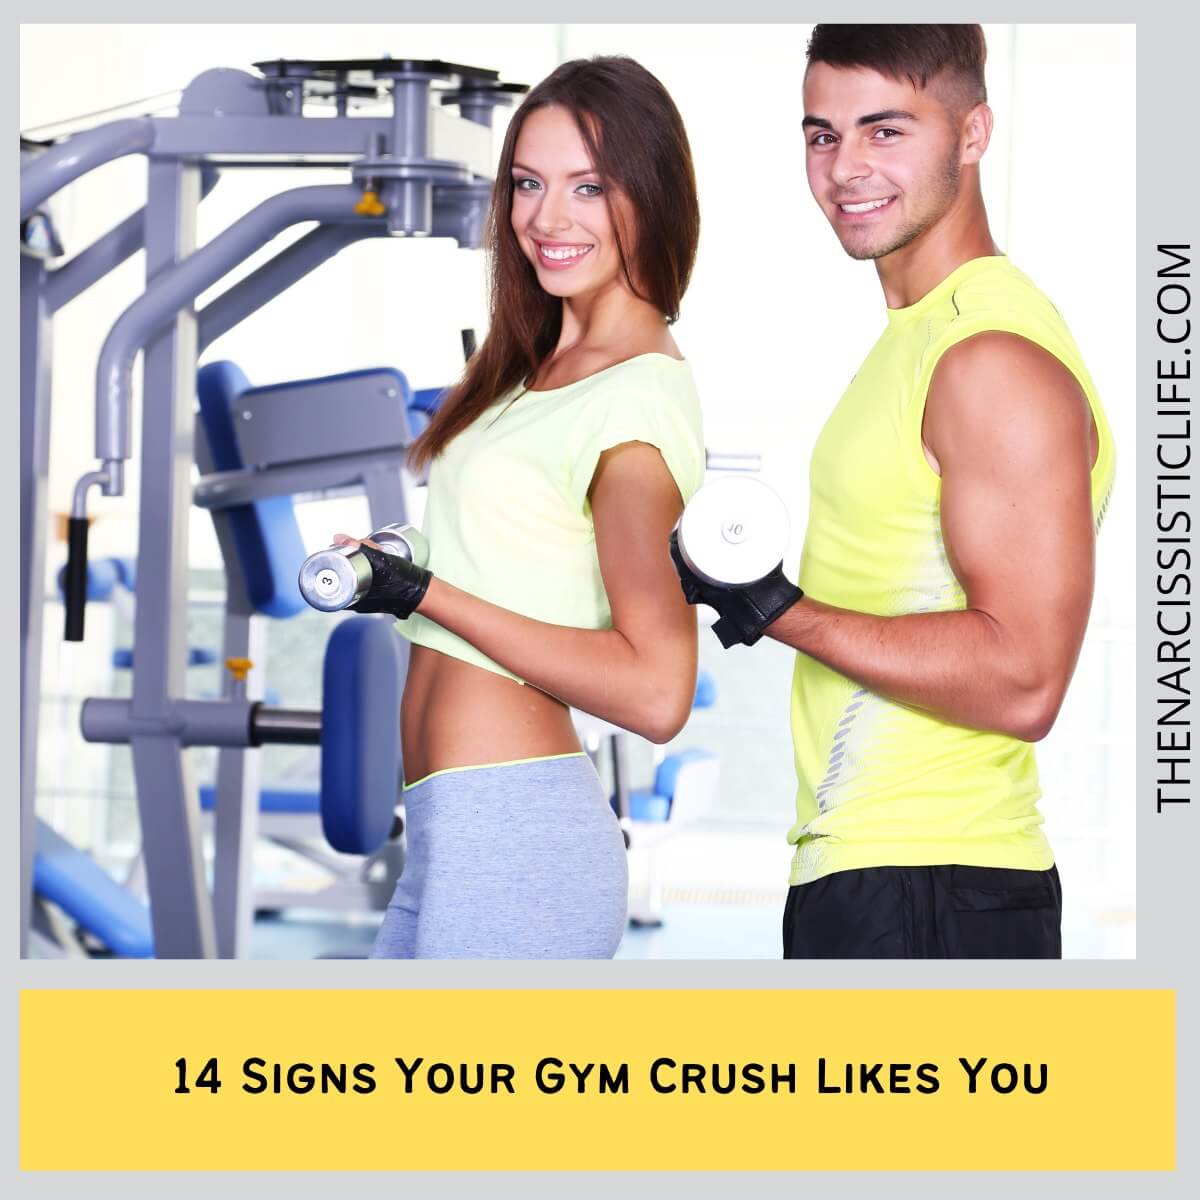 Gym Crush Menguraikan Tanda-tanda Ketertarikan di Gym (Minat)